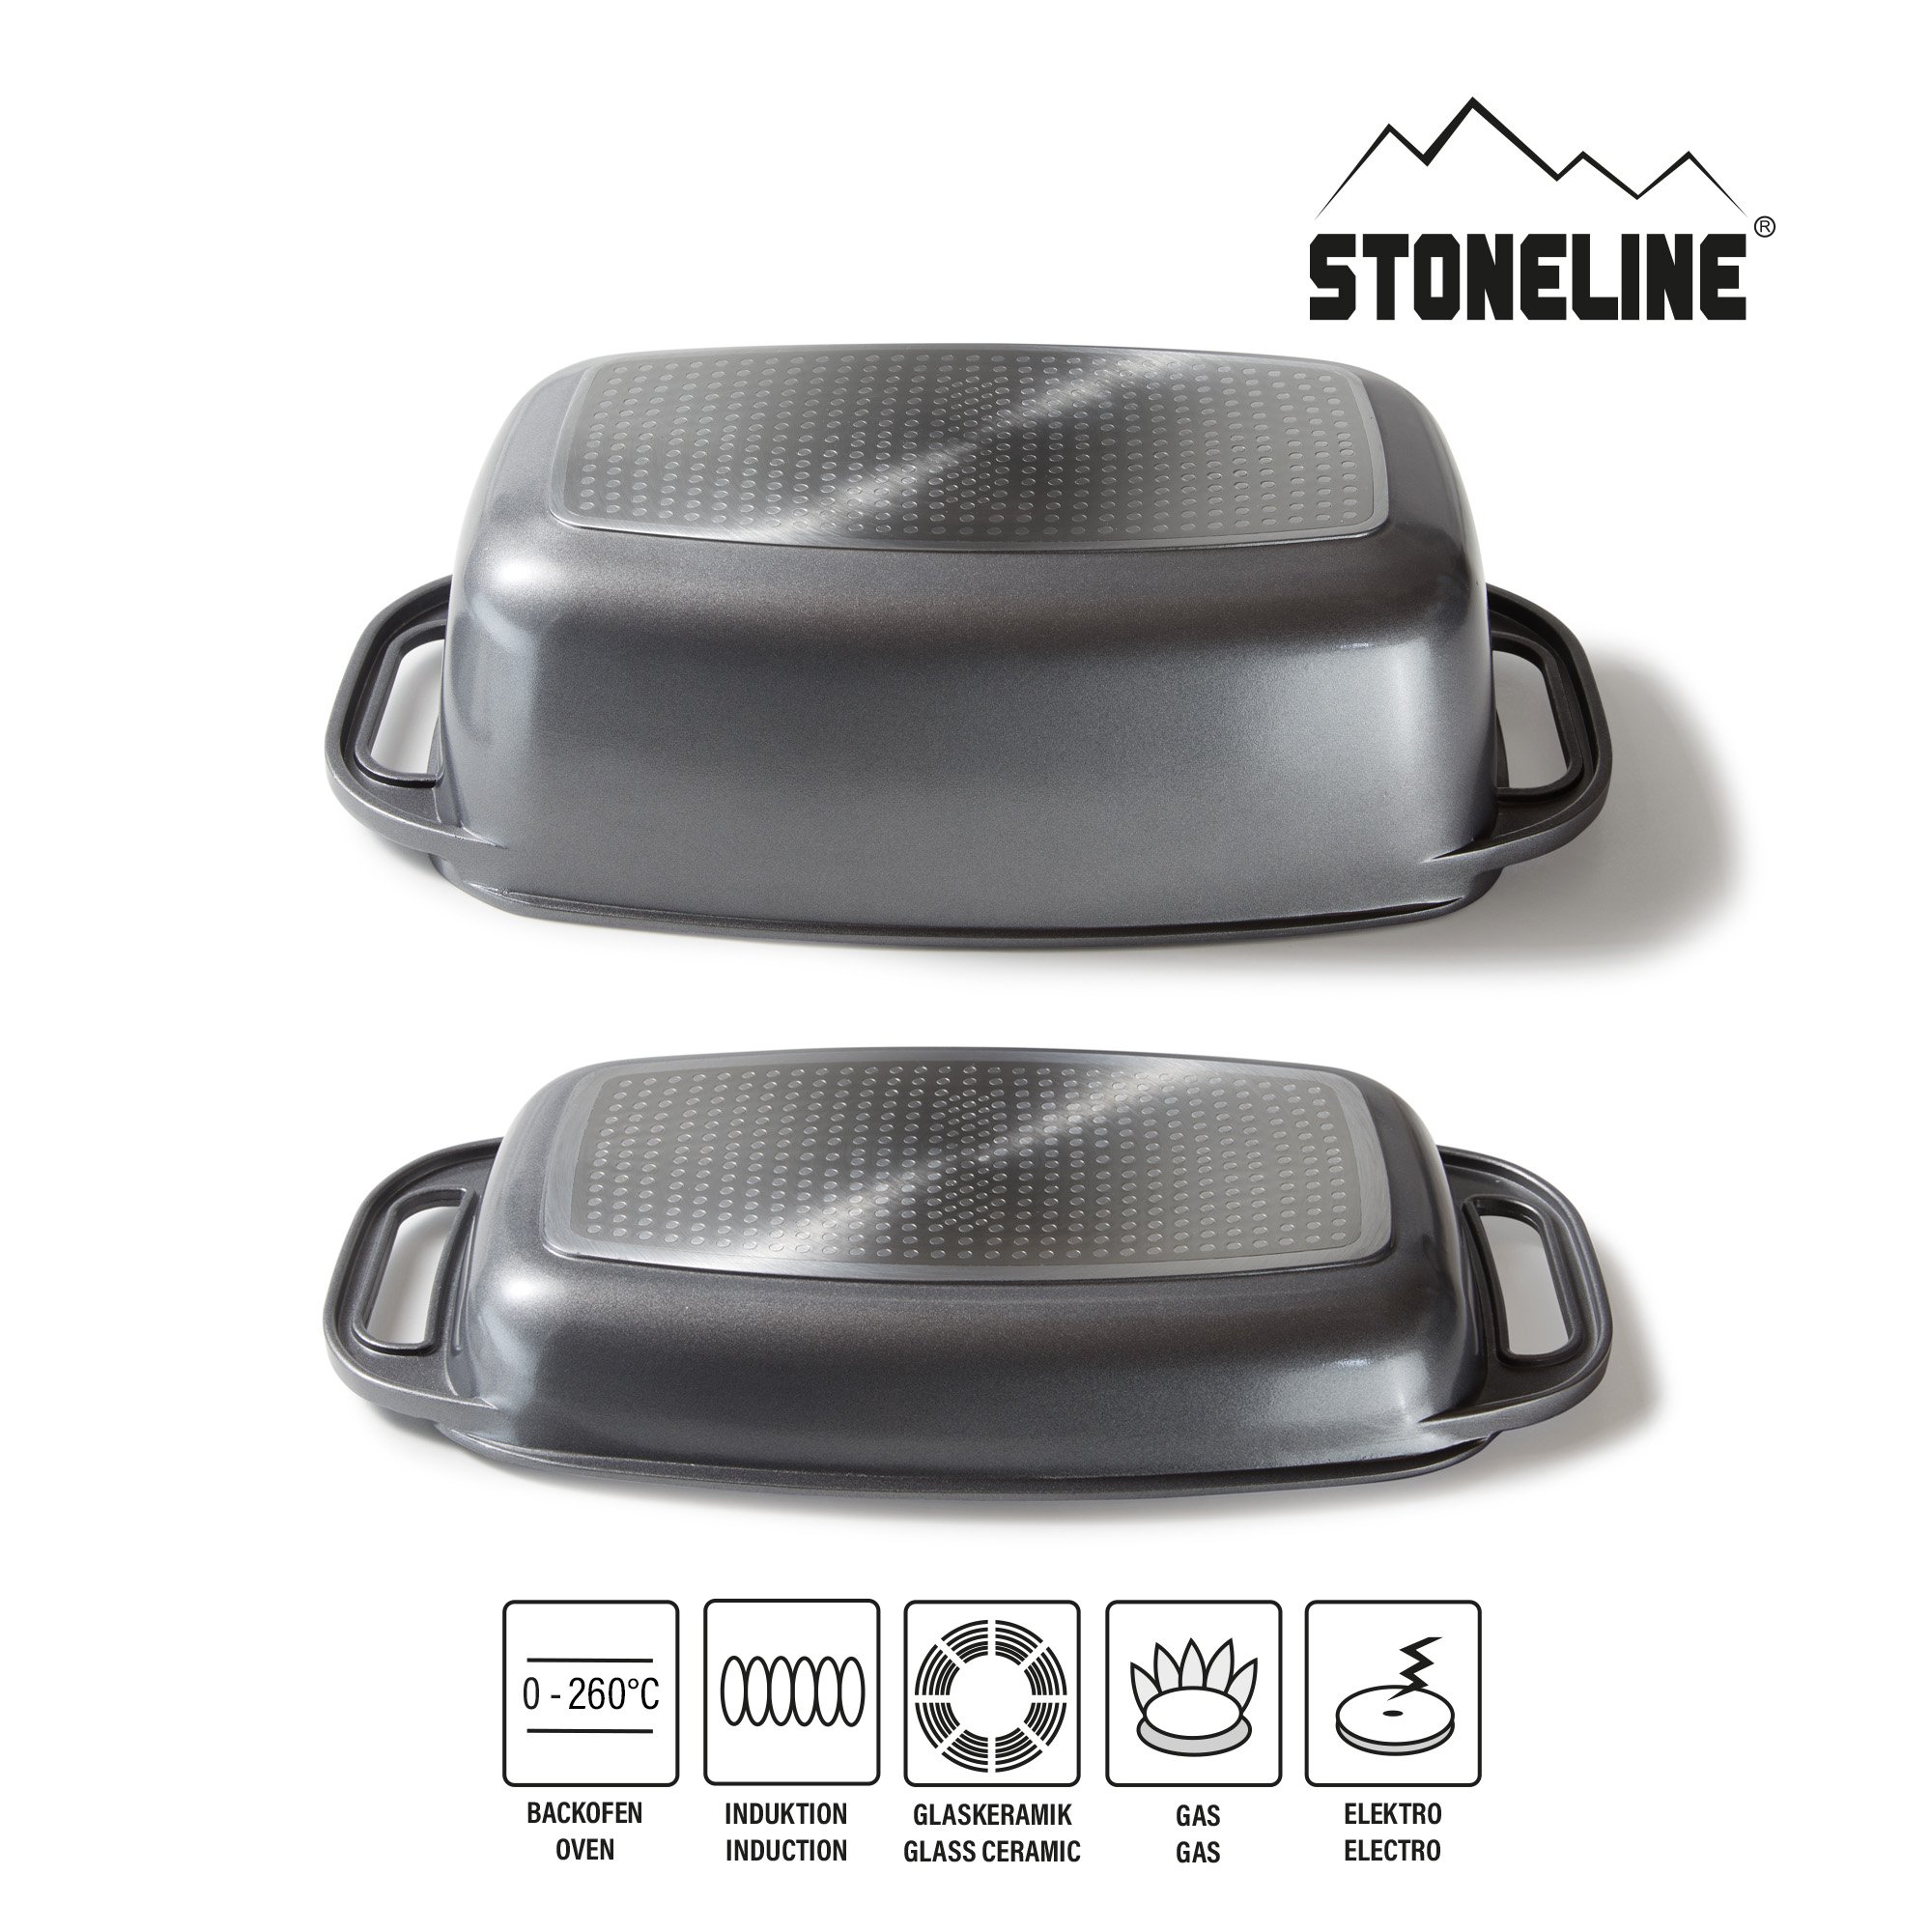 STONELINE® Tostadora 40 x 22 cm con tapa, apta para inducción y horno, revestimiento antiadherente, gris